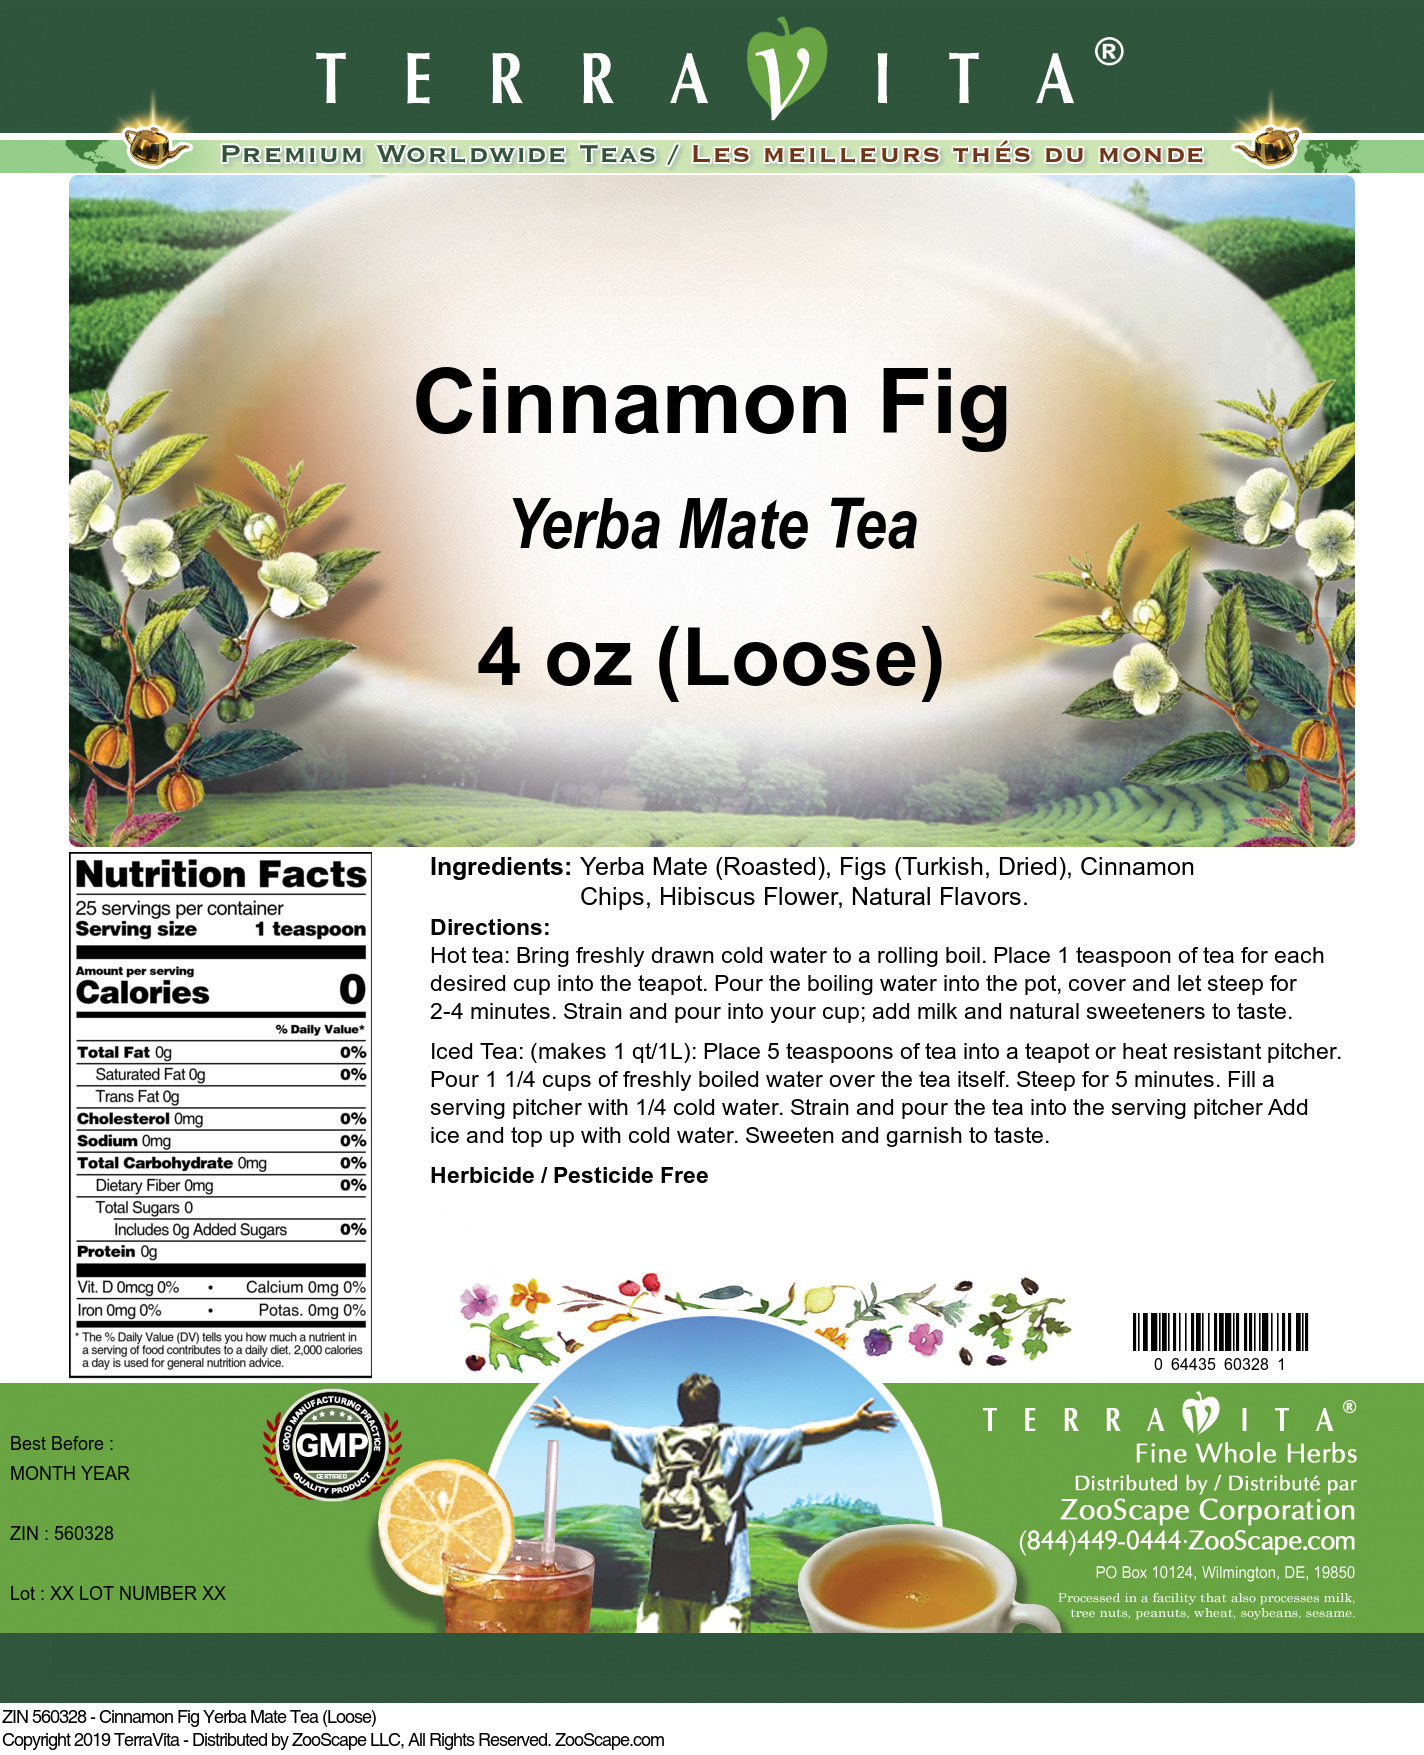 Cinnamon Fig Yerba Mate Tea (Loose) - Label